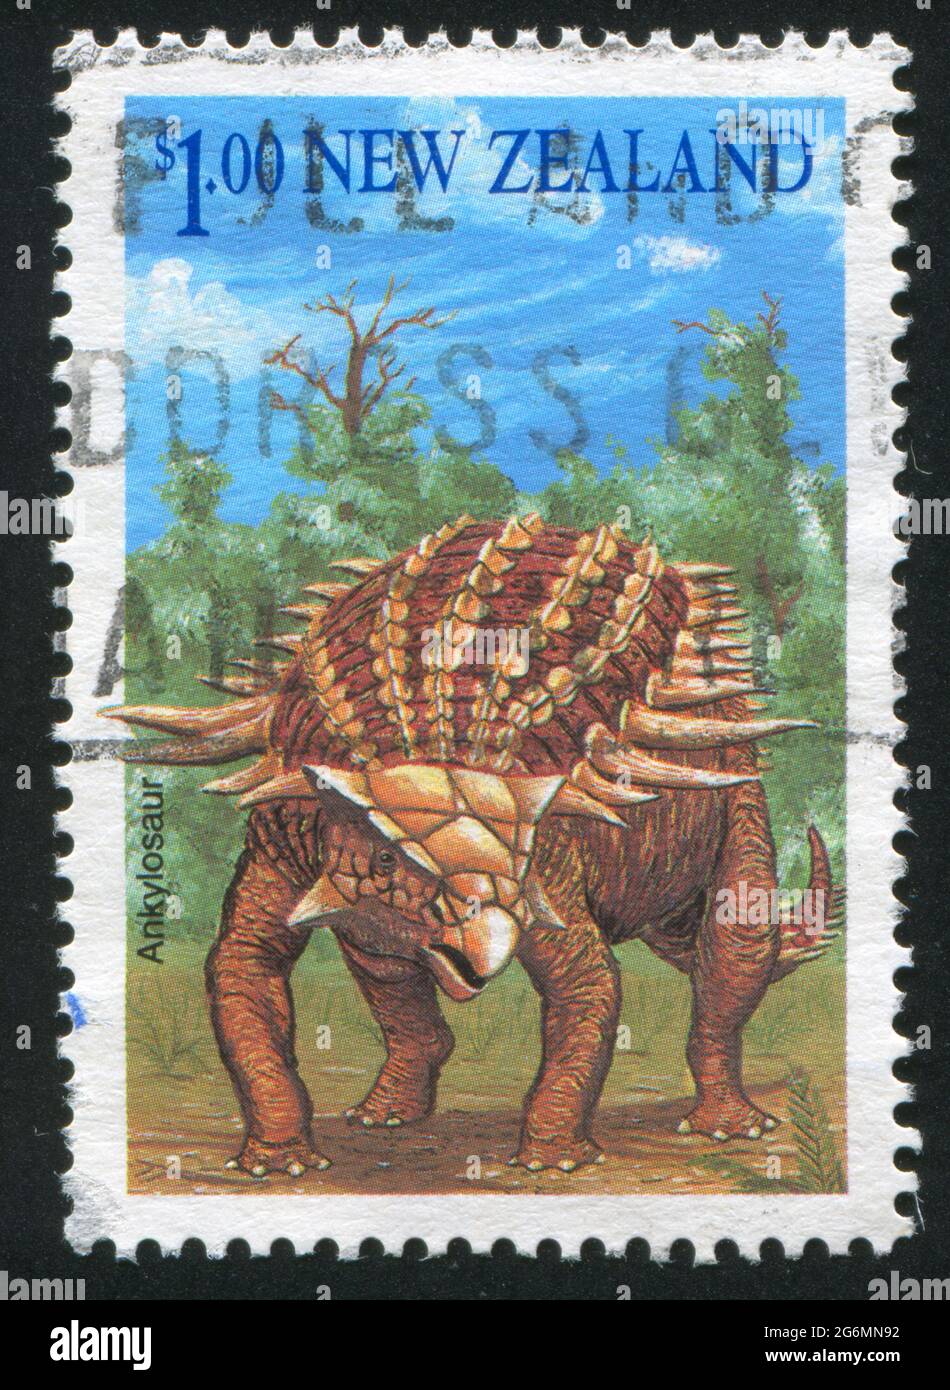 NUOVA ZELANDA - CIRCA 1993: Francobollo stampato dalla Nuova Zelanda, mostra ankylosaur, circa 1993 Foto Stock